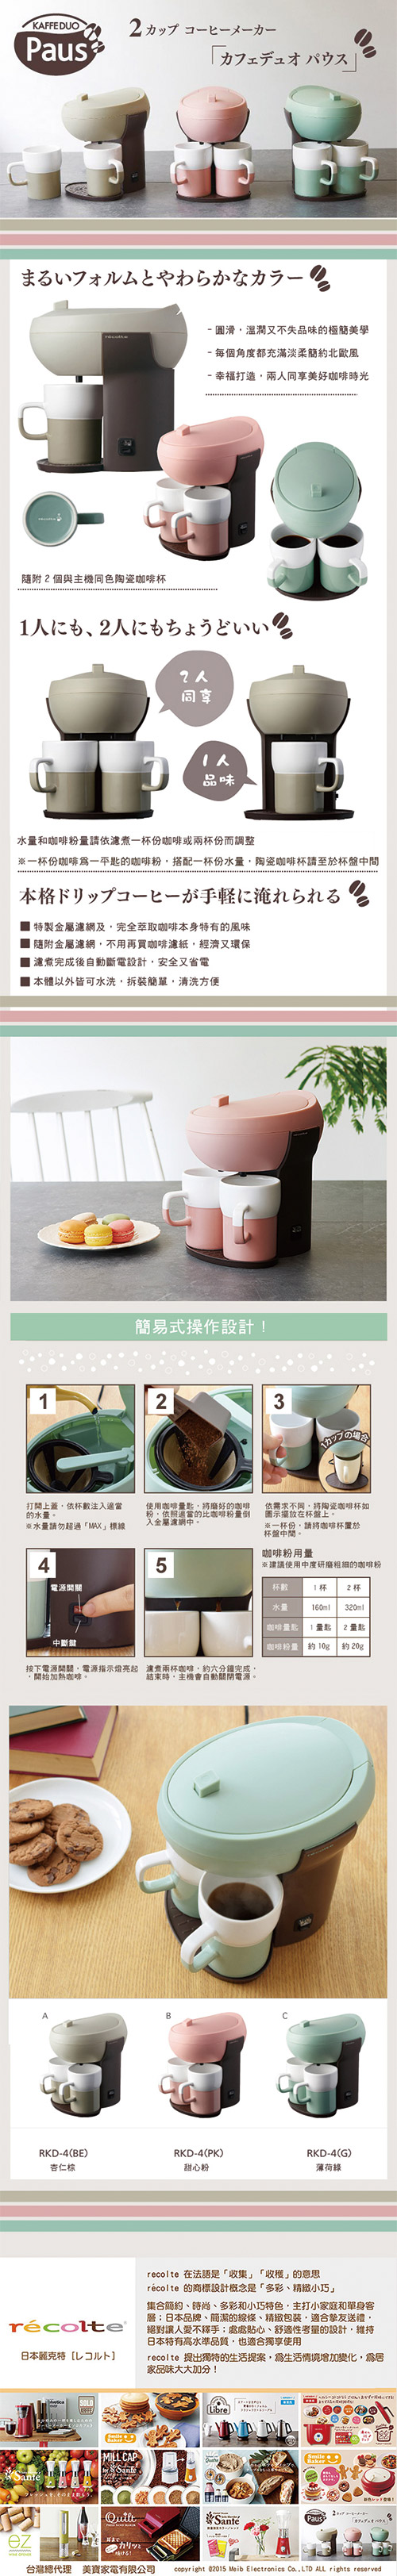 日本 recolte Kaffe Duo Paus 雙人咖啡機 薄荷綠